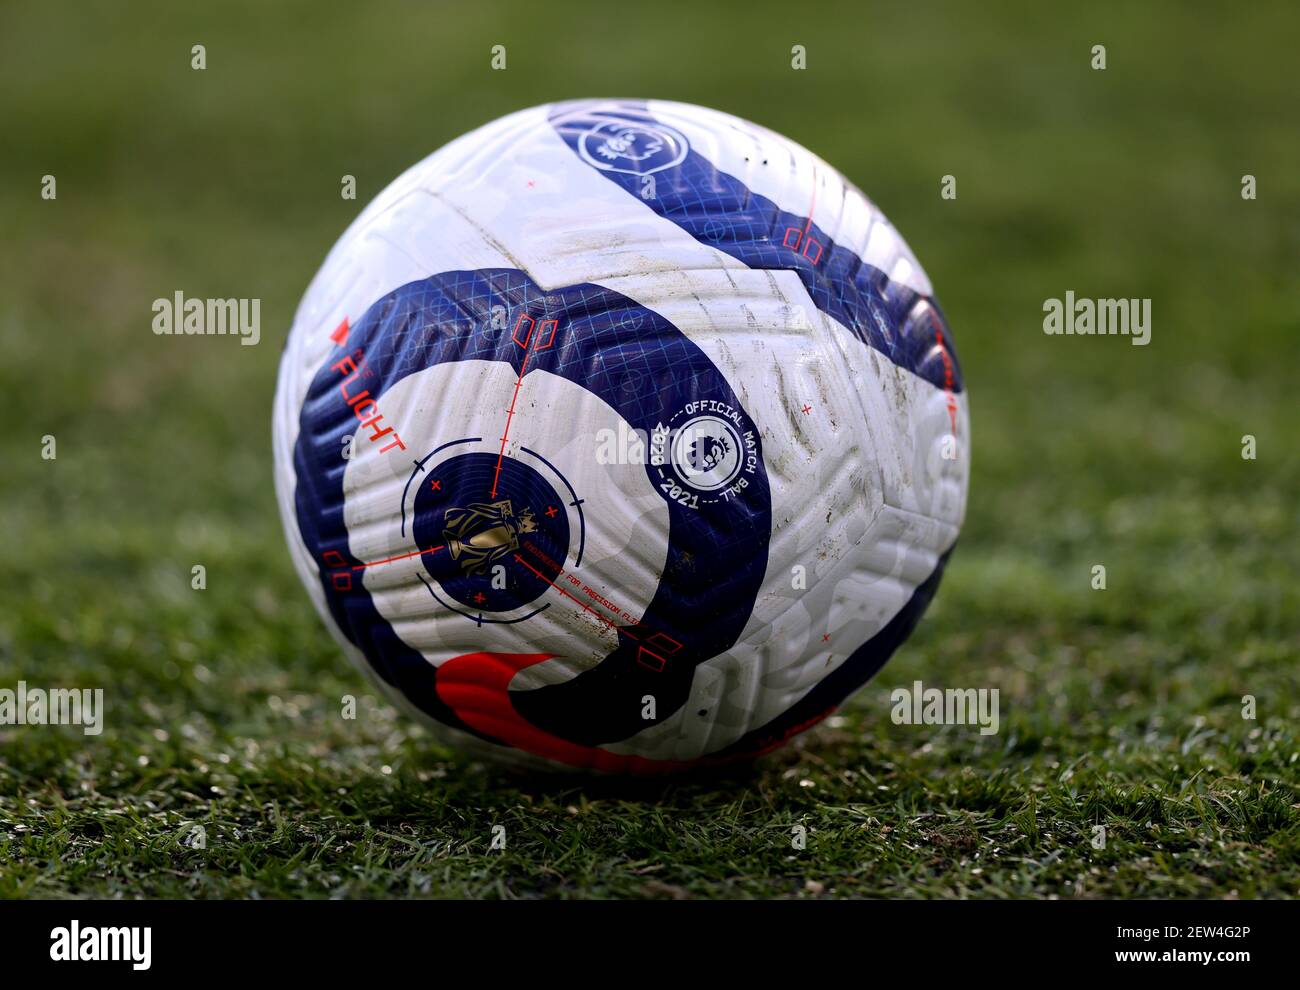 Eine Gesamtansicht eines Nike Flight Balls auf dem Spielfeld vor dem Premier League Spiel in der Elland Road, Leeds. Bilddatum: Samstag, 27. Februar 2021. Stockfoto